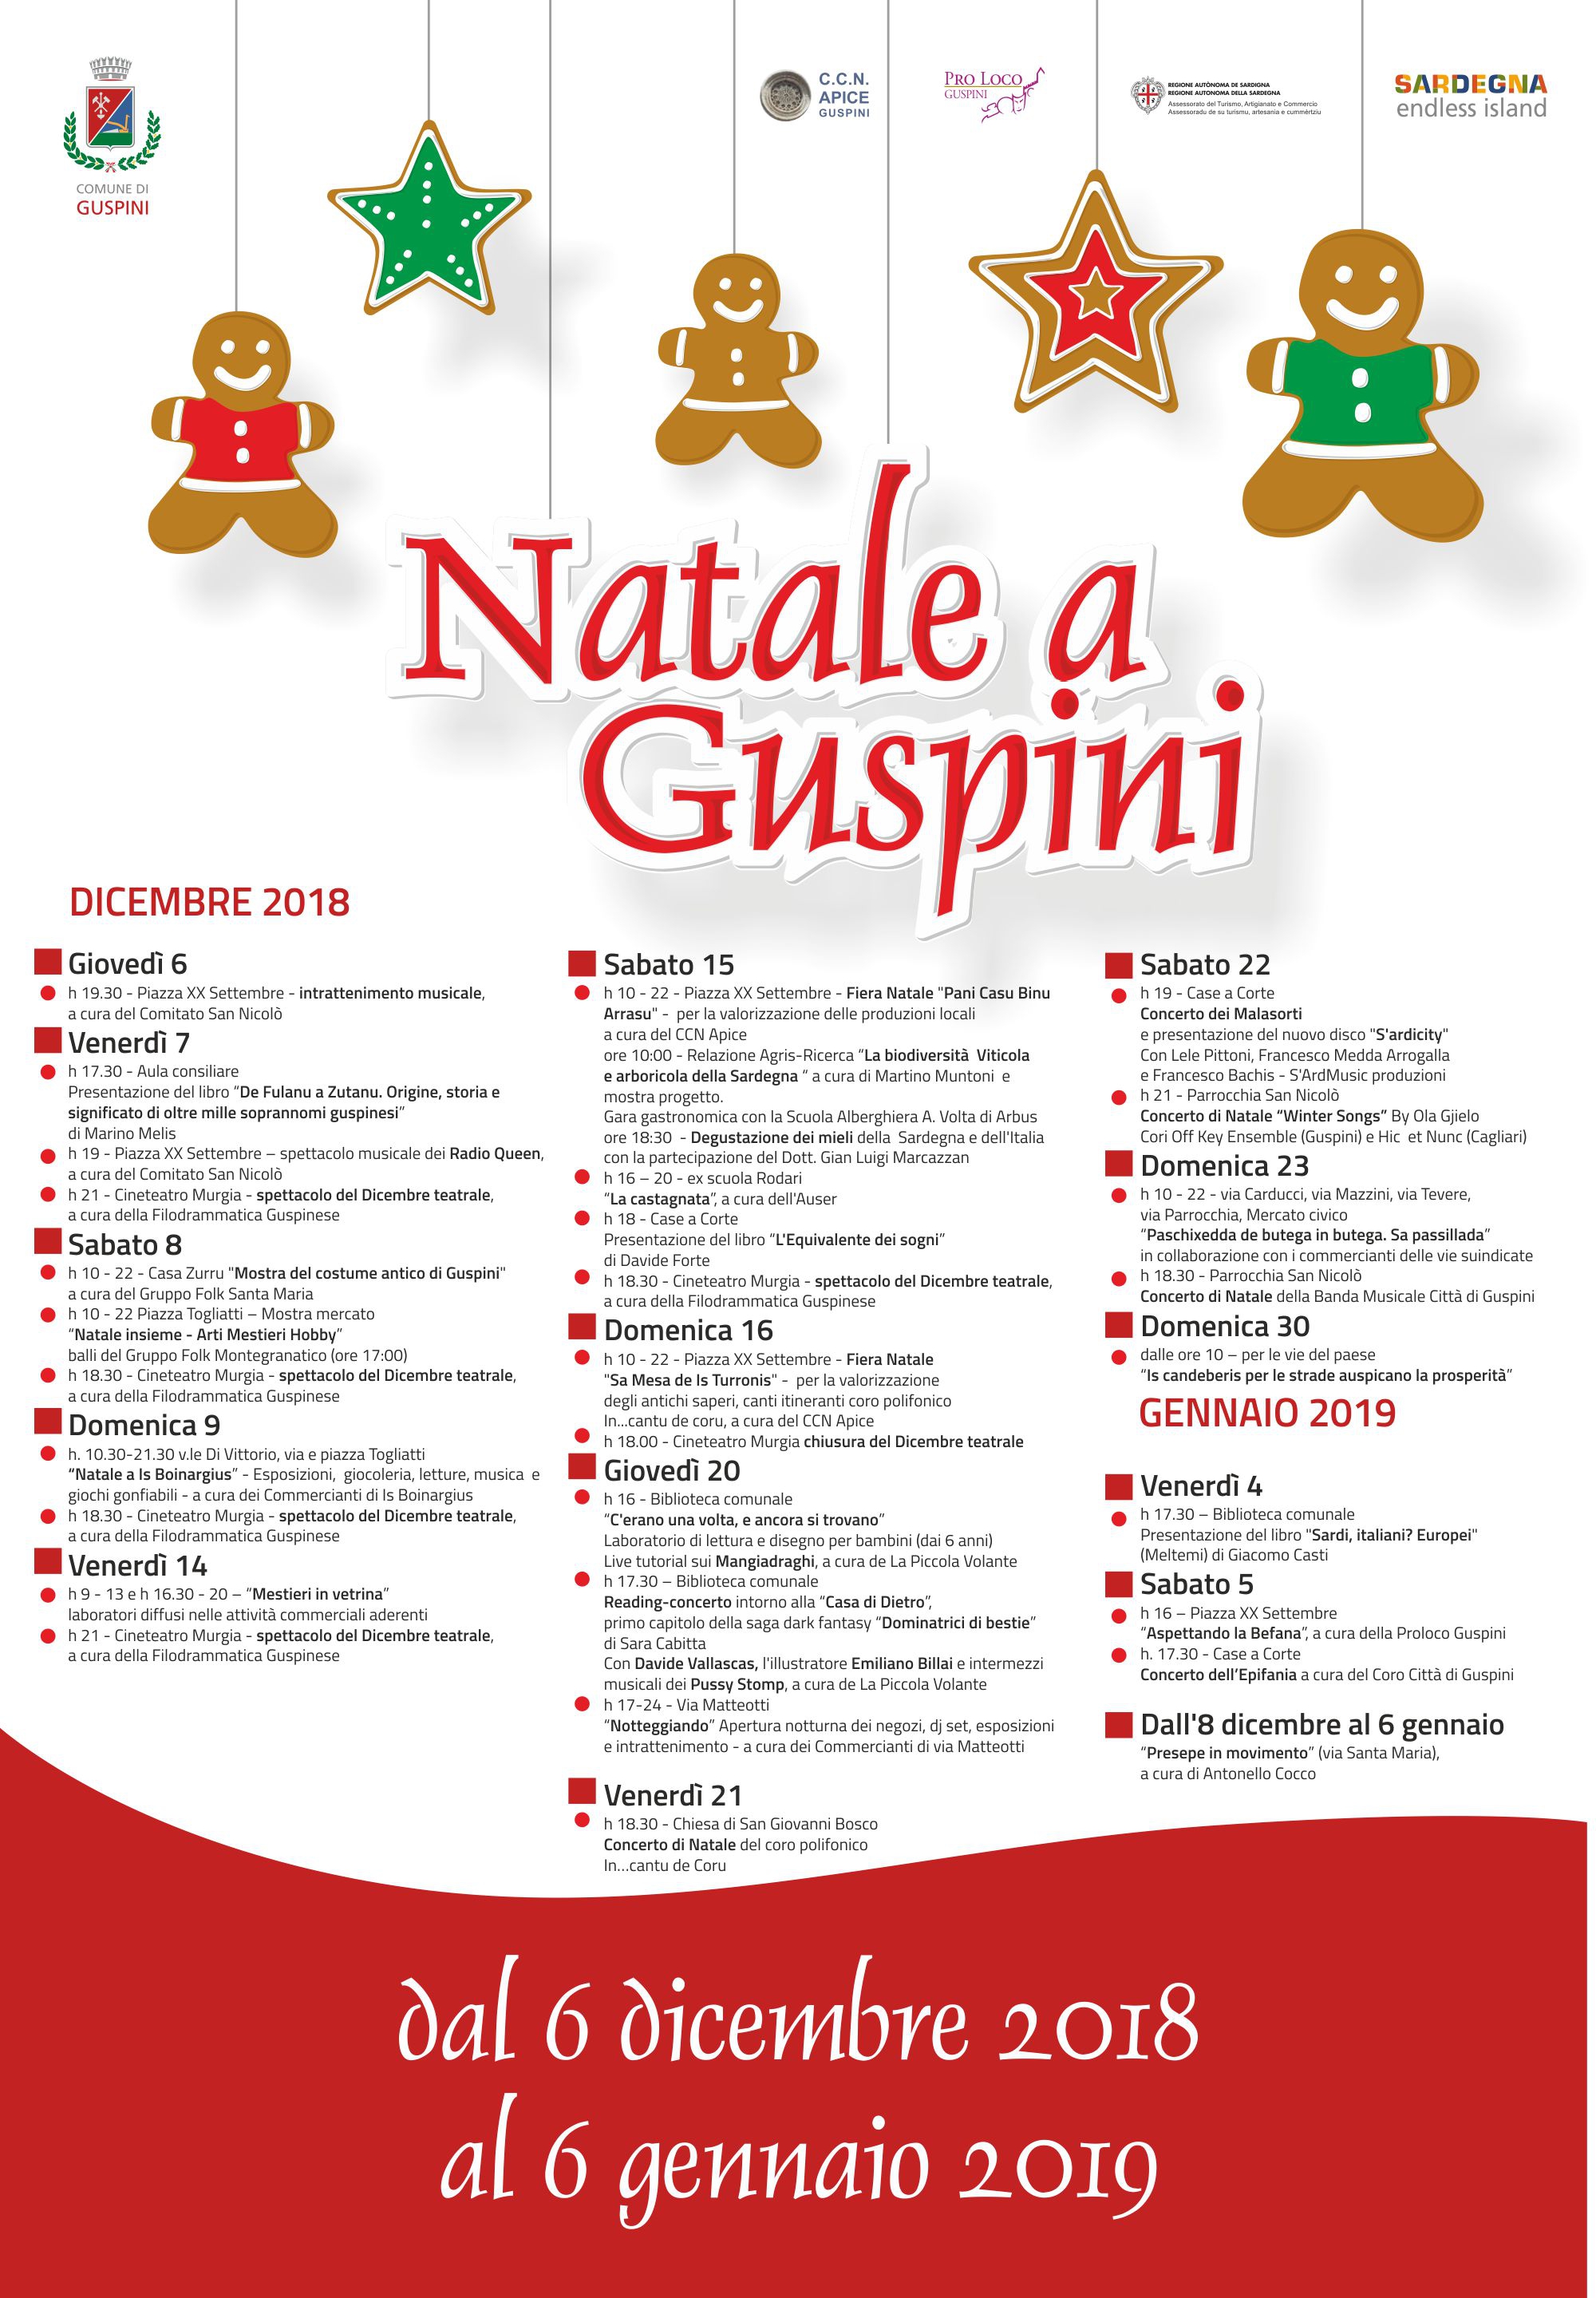 Natale a Guspini 2018. Un dicembre ricco di eventi.